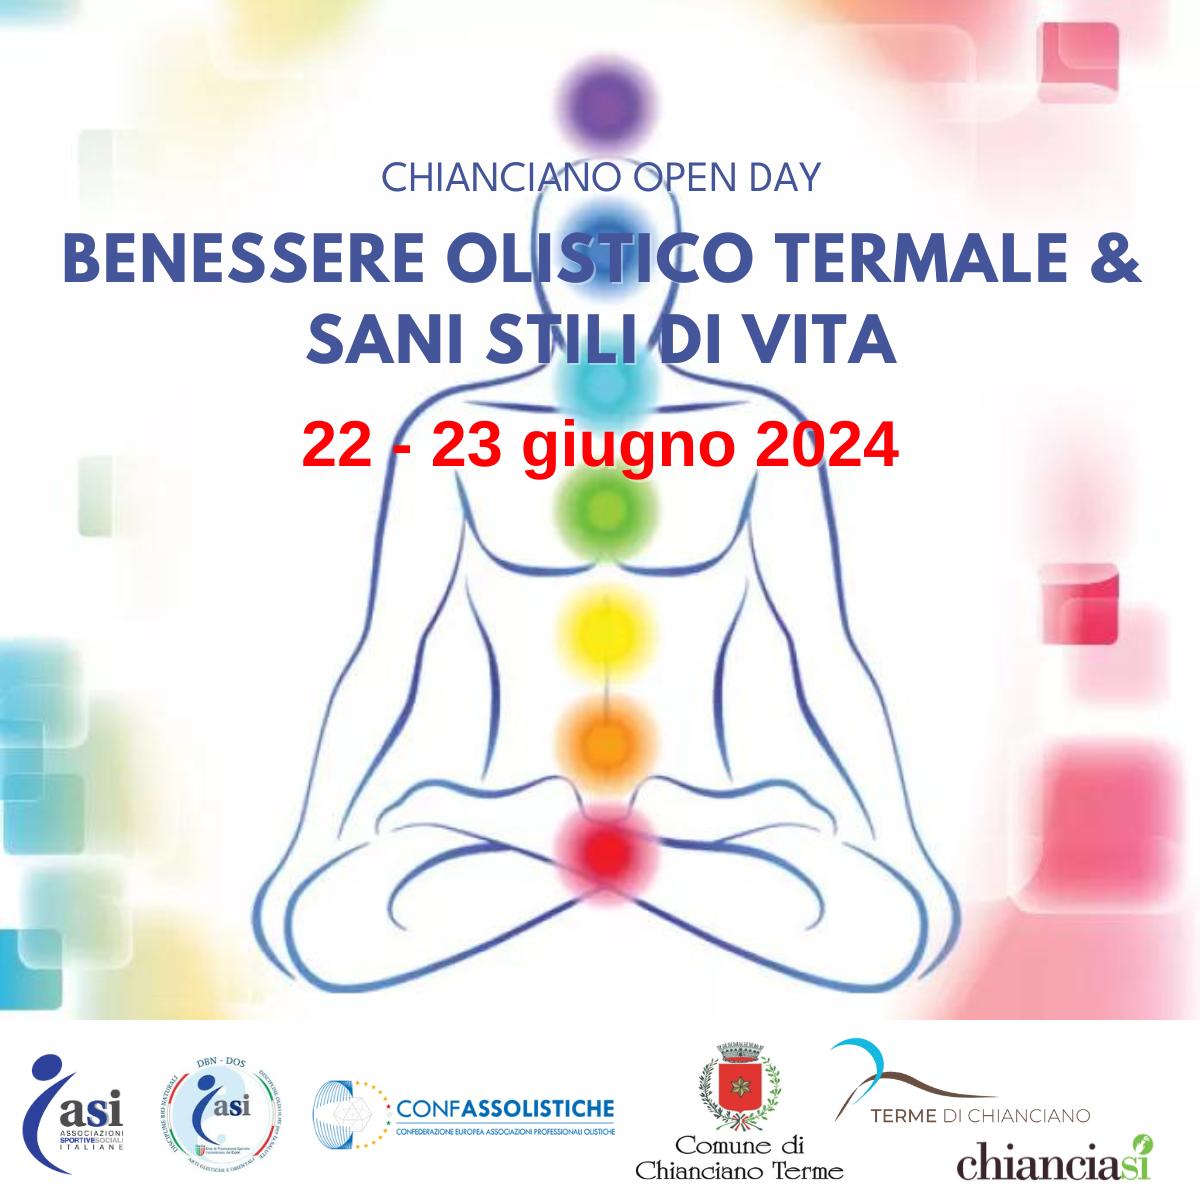 Locandina dell'Open Day a Chianciano Terme il 22-23 giugno 2024, evento dedicato al benessere termale olistico e a uno stile di vita sano.